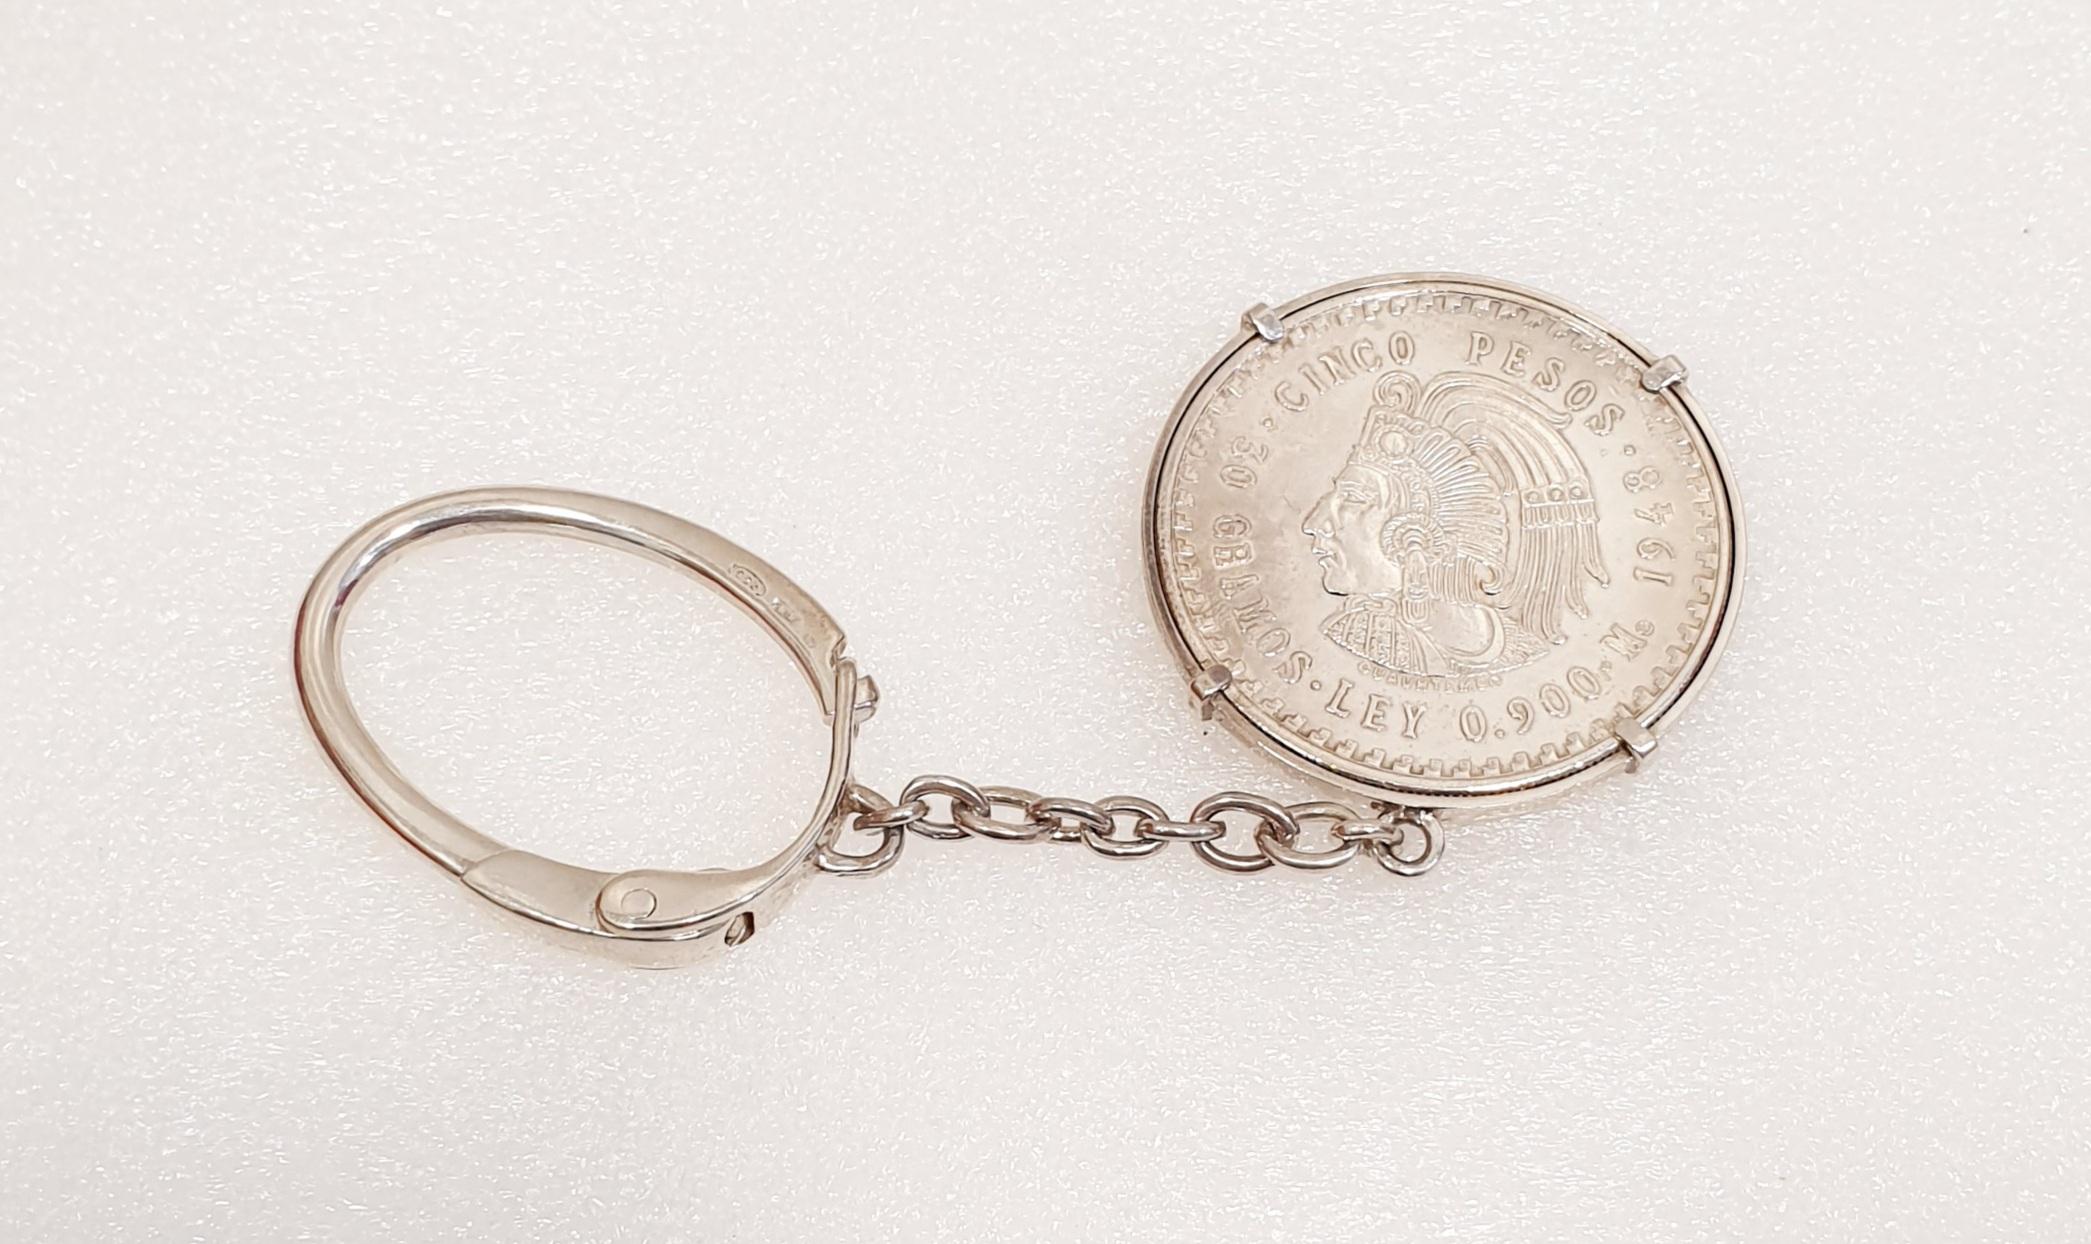 Pièce Argent 5 Pesos 1947 Cuauhtemoc Dans Son Porte Clé
Pièce de 5 Pesos Cuauhtémoc en argent, année 1947, avec son éclat d'origine dans son porte-clés
Poids : 30 grammes.      
Diamètre de la pièce  4cm
Longueur du porte-clés  12,5cm
Pendant deux